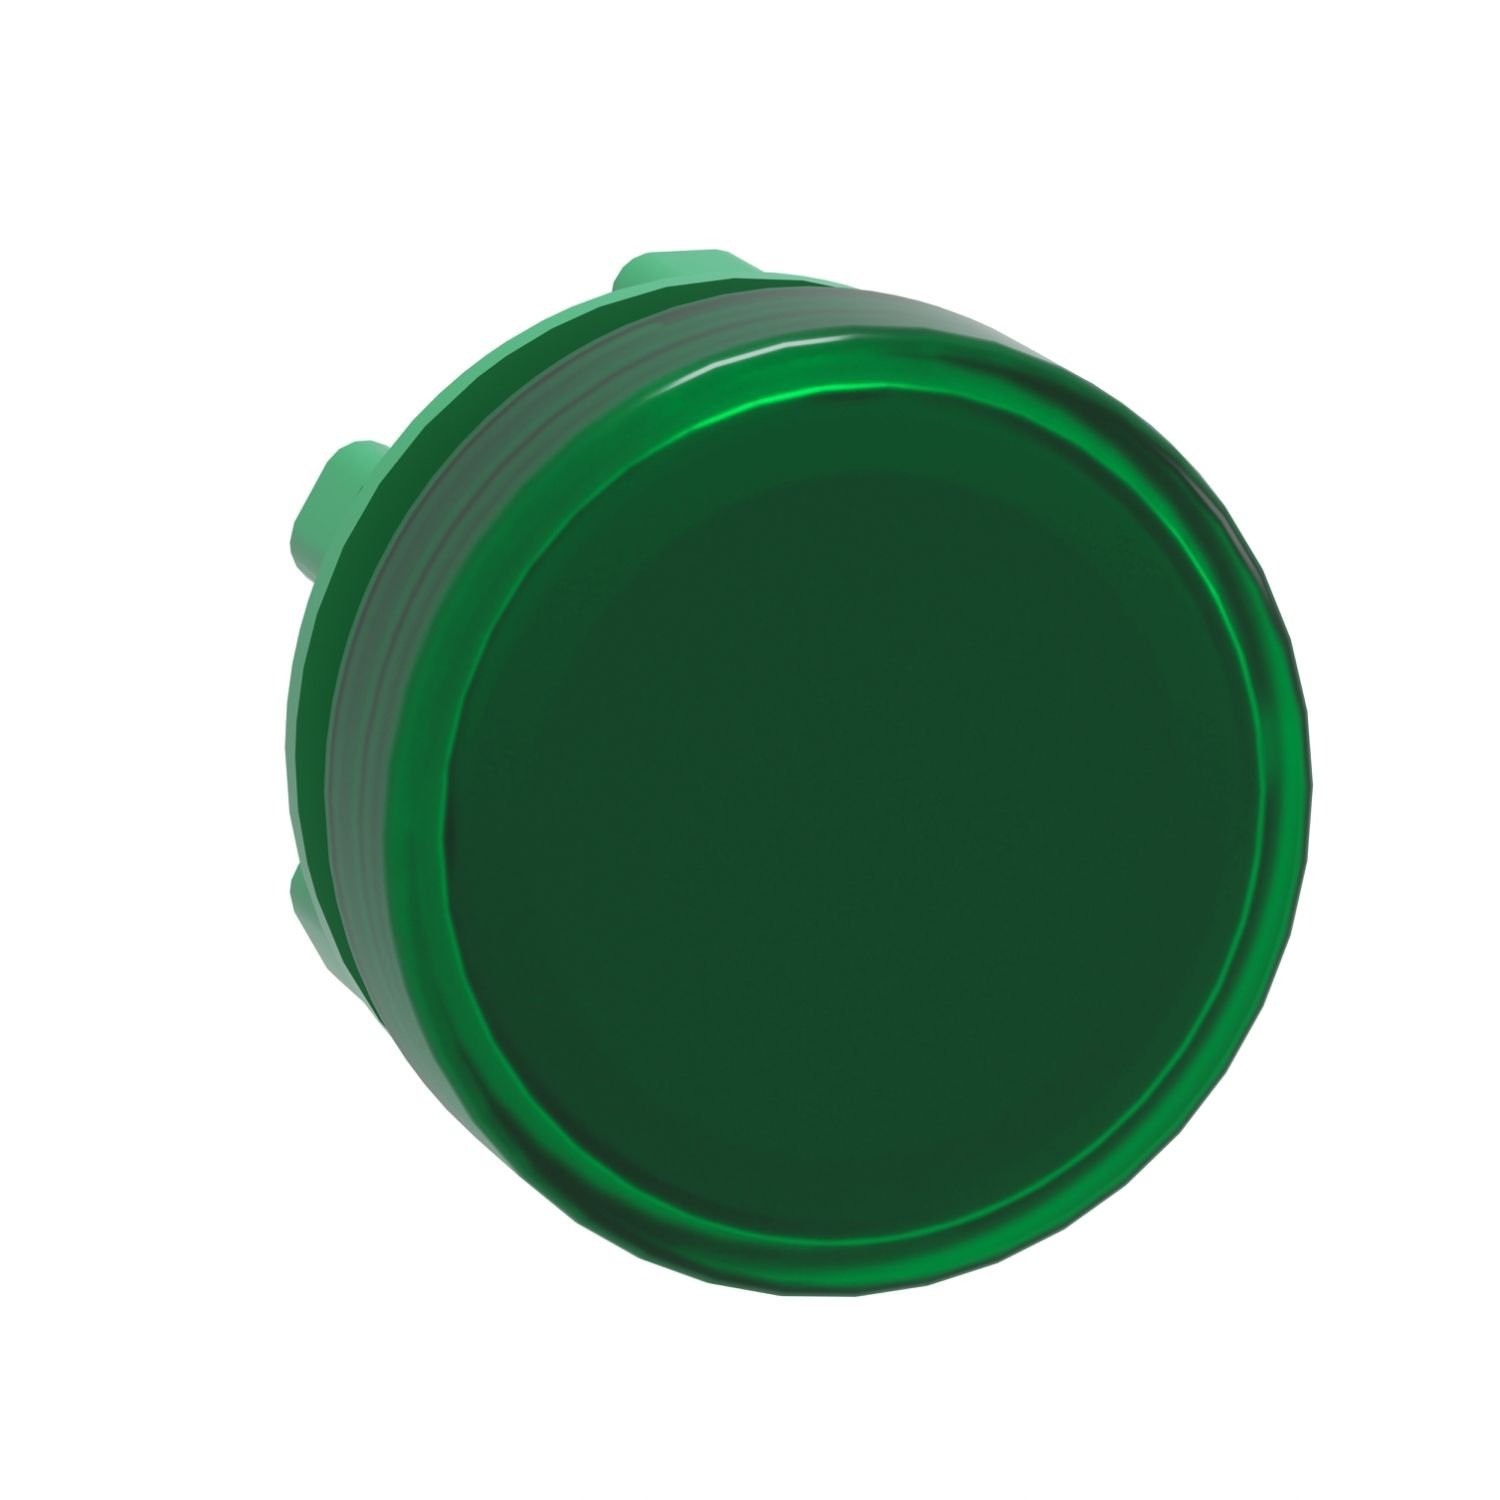 ZB5AV033 Harmony XB5, Pilot light head, metal, green, Ø22, plain lens for integral LED